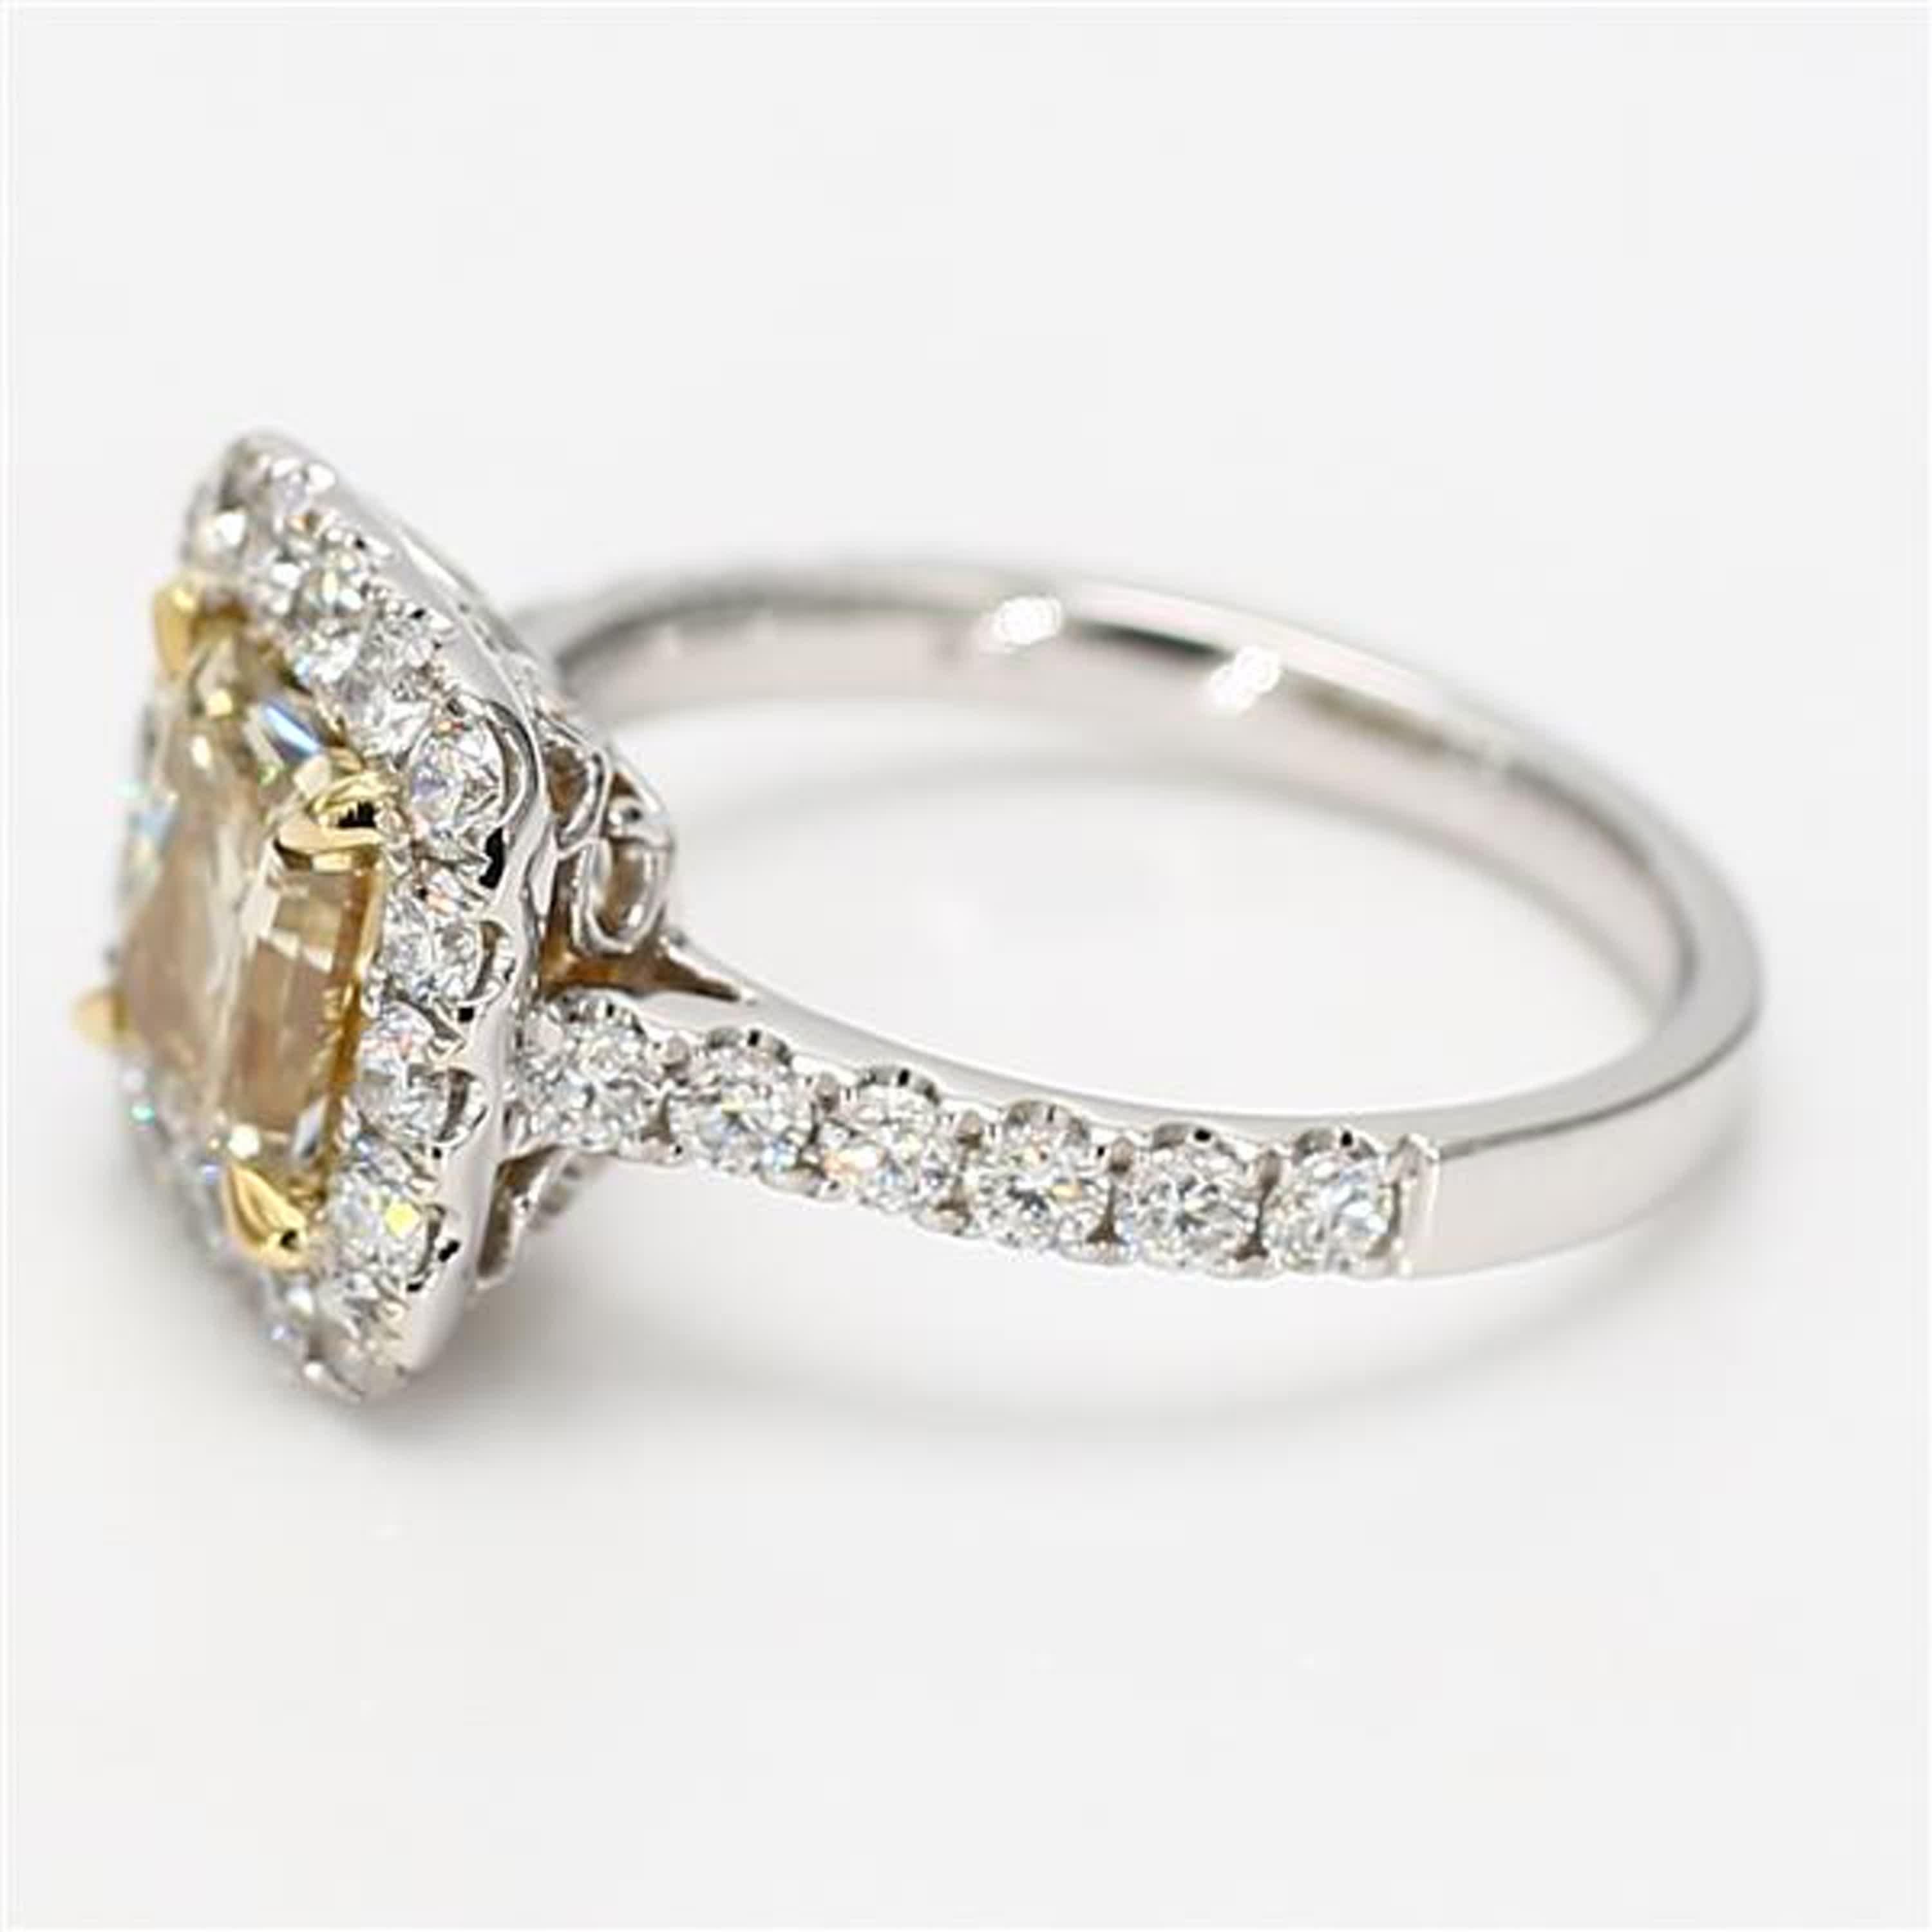 La bague classique en diamant certifiée GIA de Raregemworld. Monté dans une belle monture en or jaune et blanc 18 carats avec un diamant jaune naturel de taille radieuse. Le diamant jaune est entouré d'une mêlée de diamants blancs ronds naturels.